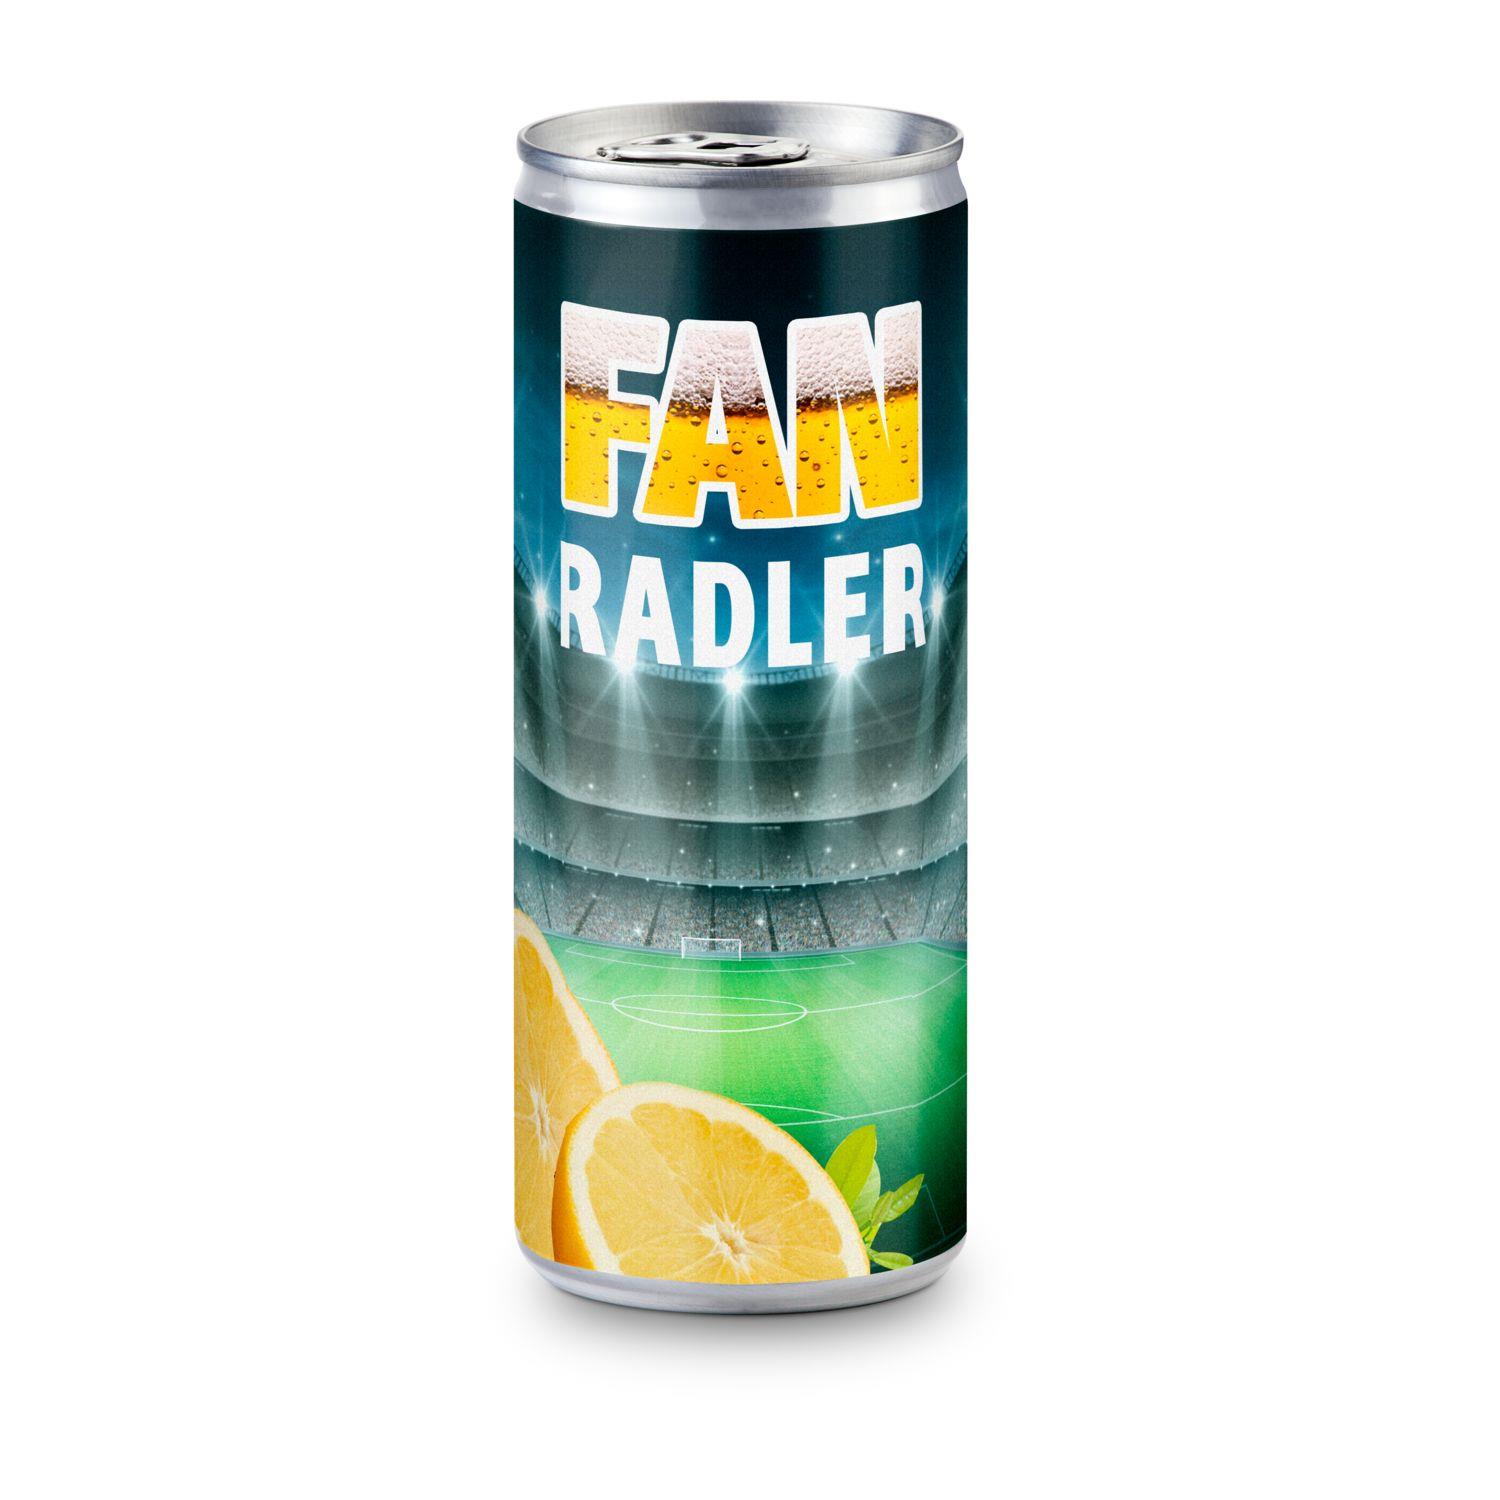 Radler - Bier und Zitronenlimonade - Eco Papier